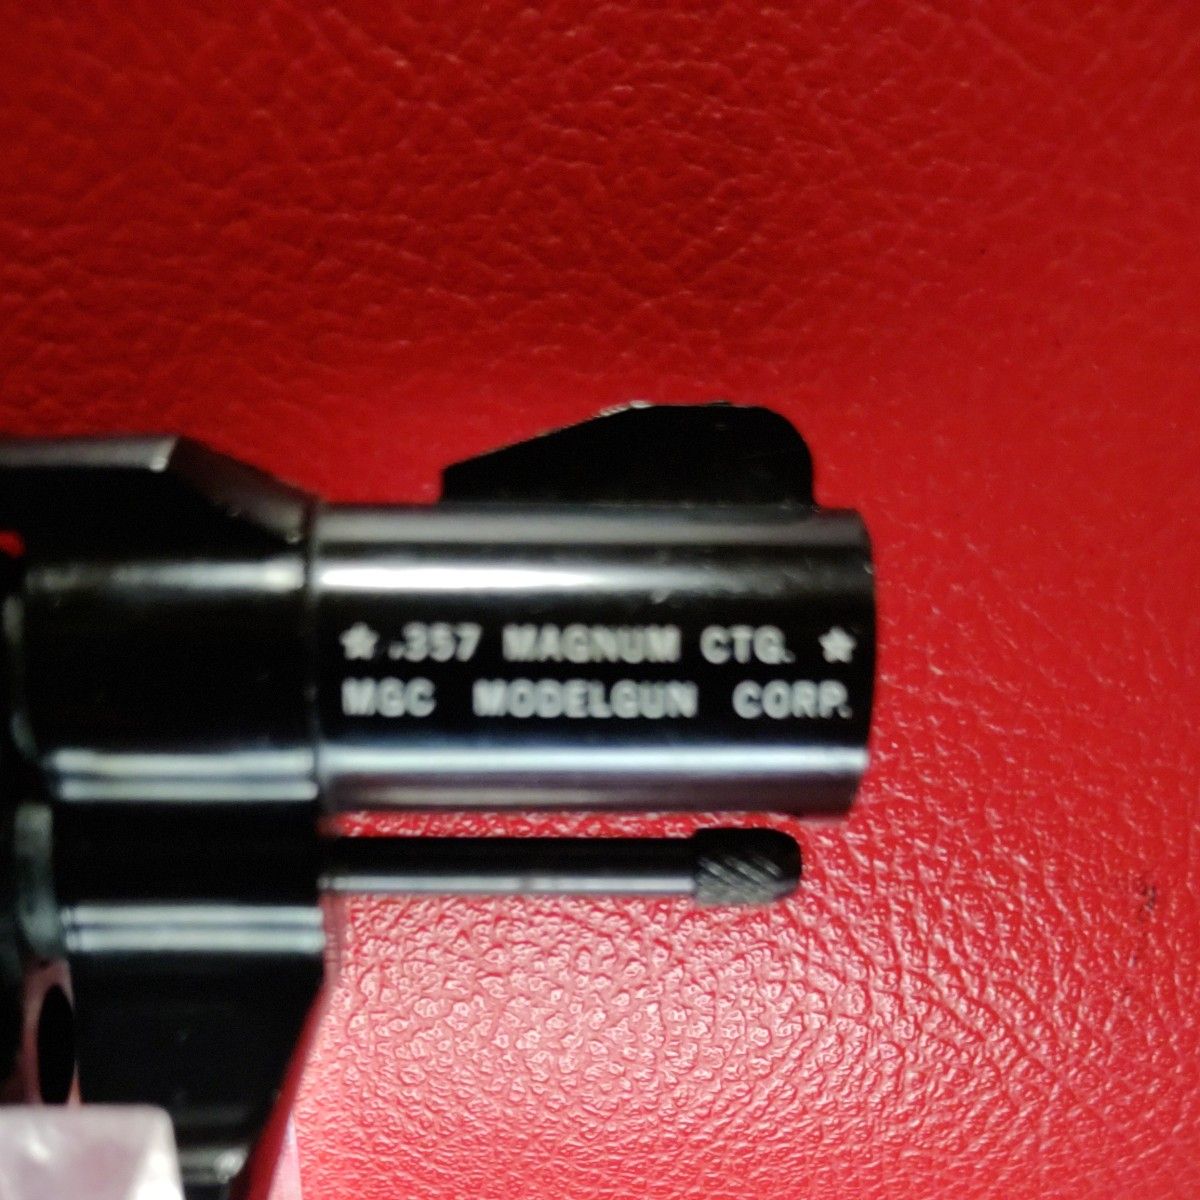 MGC社製コルトローマンMK-Ⅲ357マグナム2inch OLD TYPE木製グリップ付きスペシャルバージョンモデル